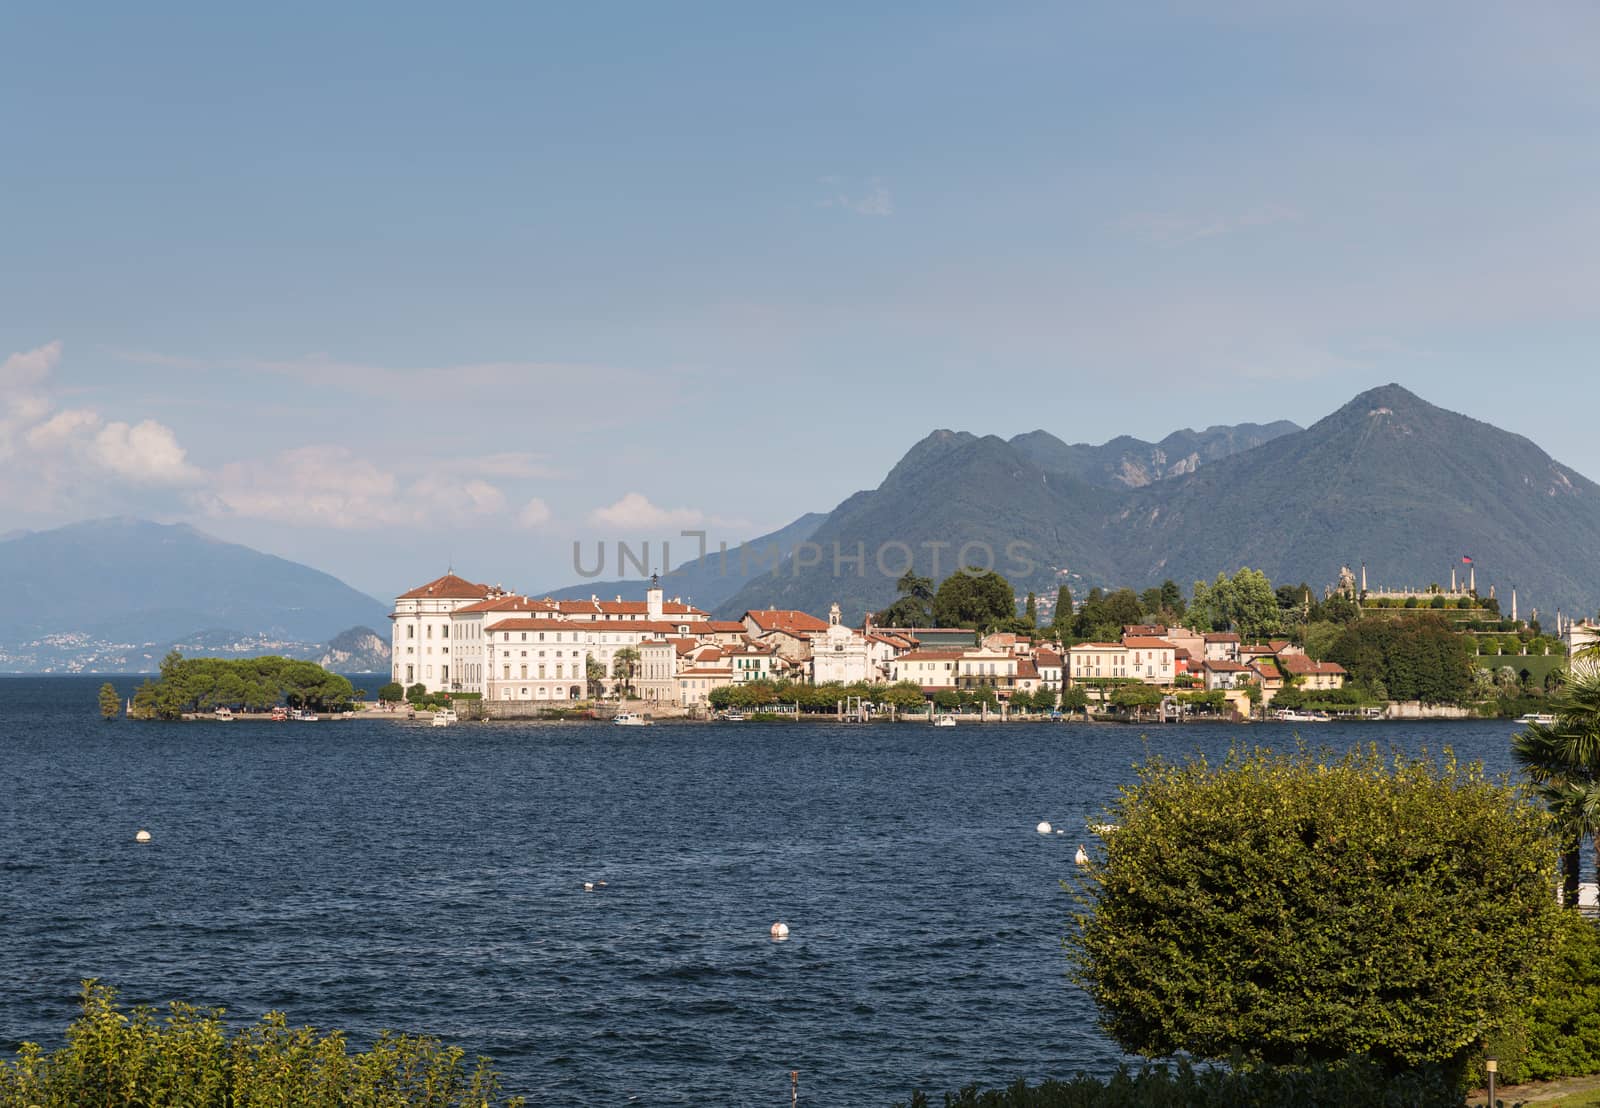 Isloa Bella in Lake Maggiore near Stresa Italy by chrisukphoto